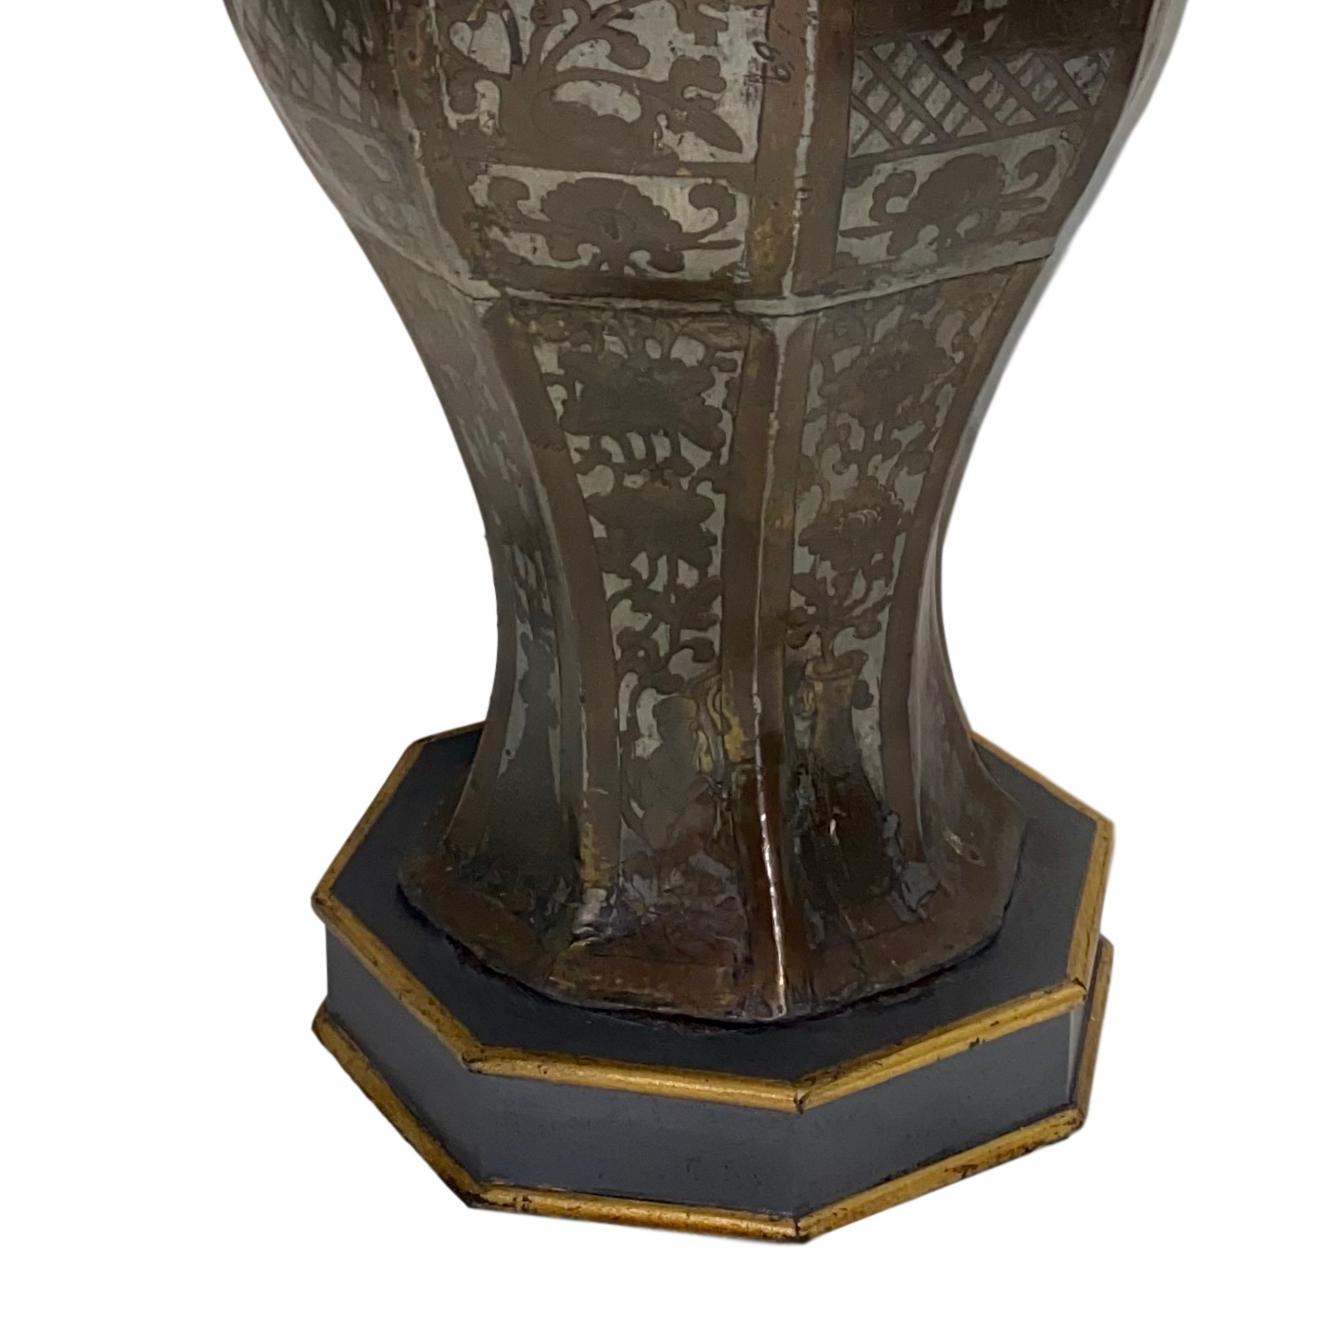 Lampe de table à motif de chinoiserie anglaise, datant d'environ 1900.

Mesures :
Hauteur du corps : 17,5 ?
Diamètre : 8 ?